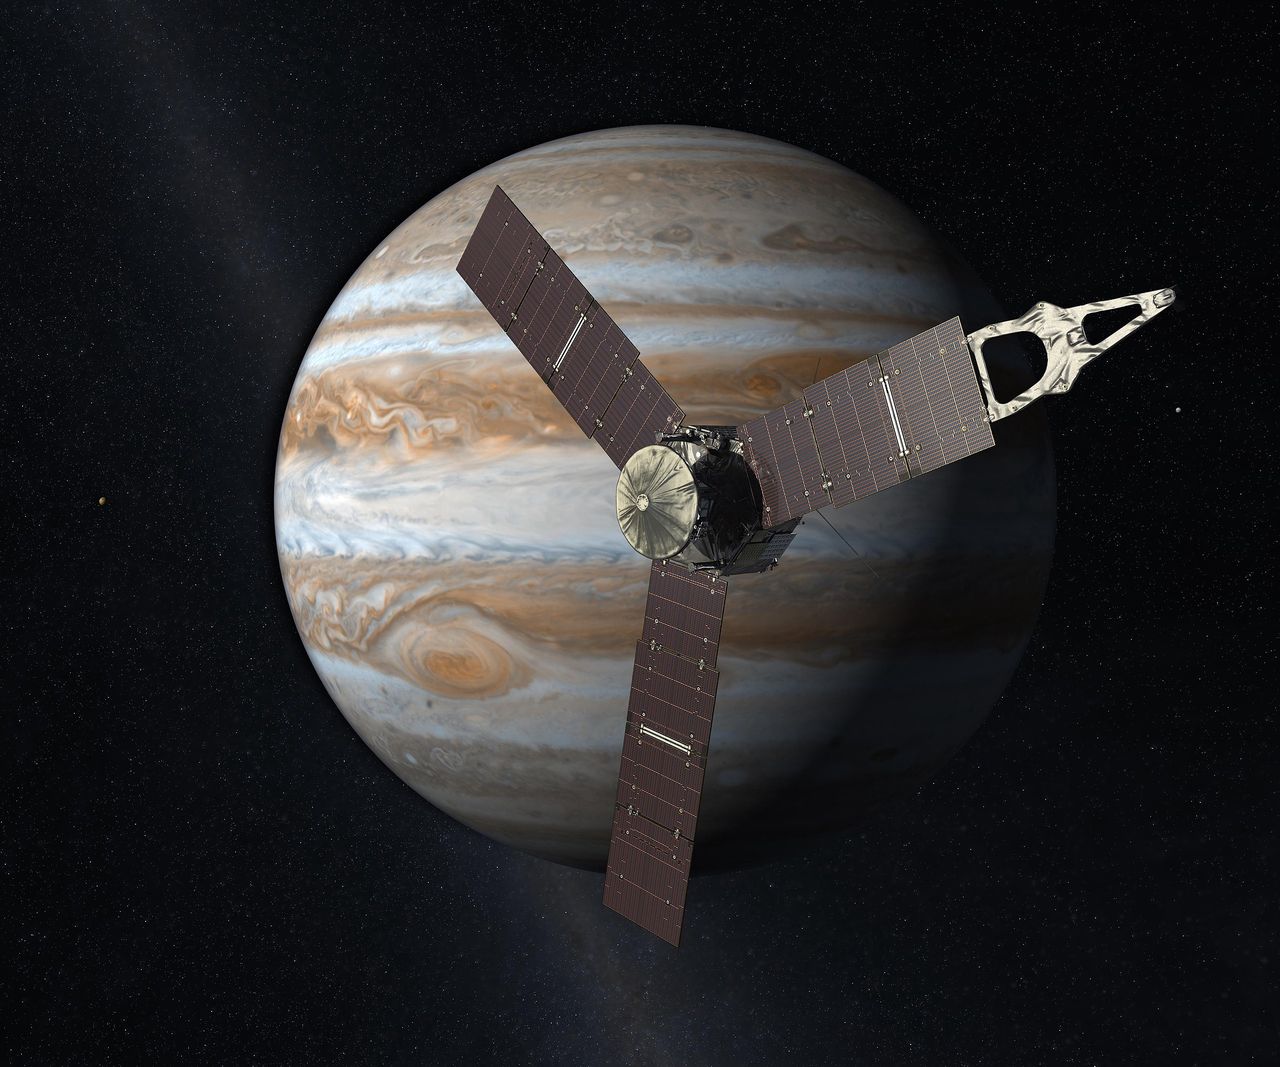 Sonda Juno z ważnym odkryciem. Instrument NASA bada tajemnice księżyców Jowisza